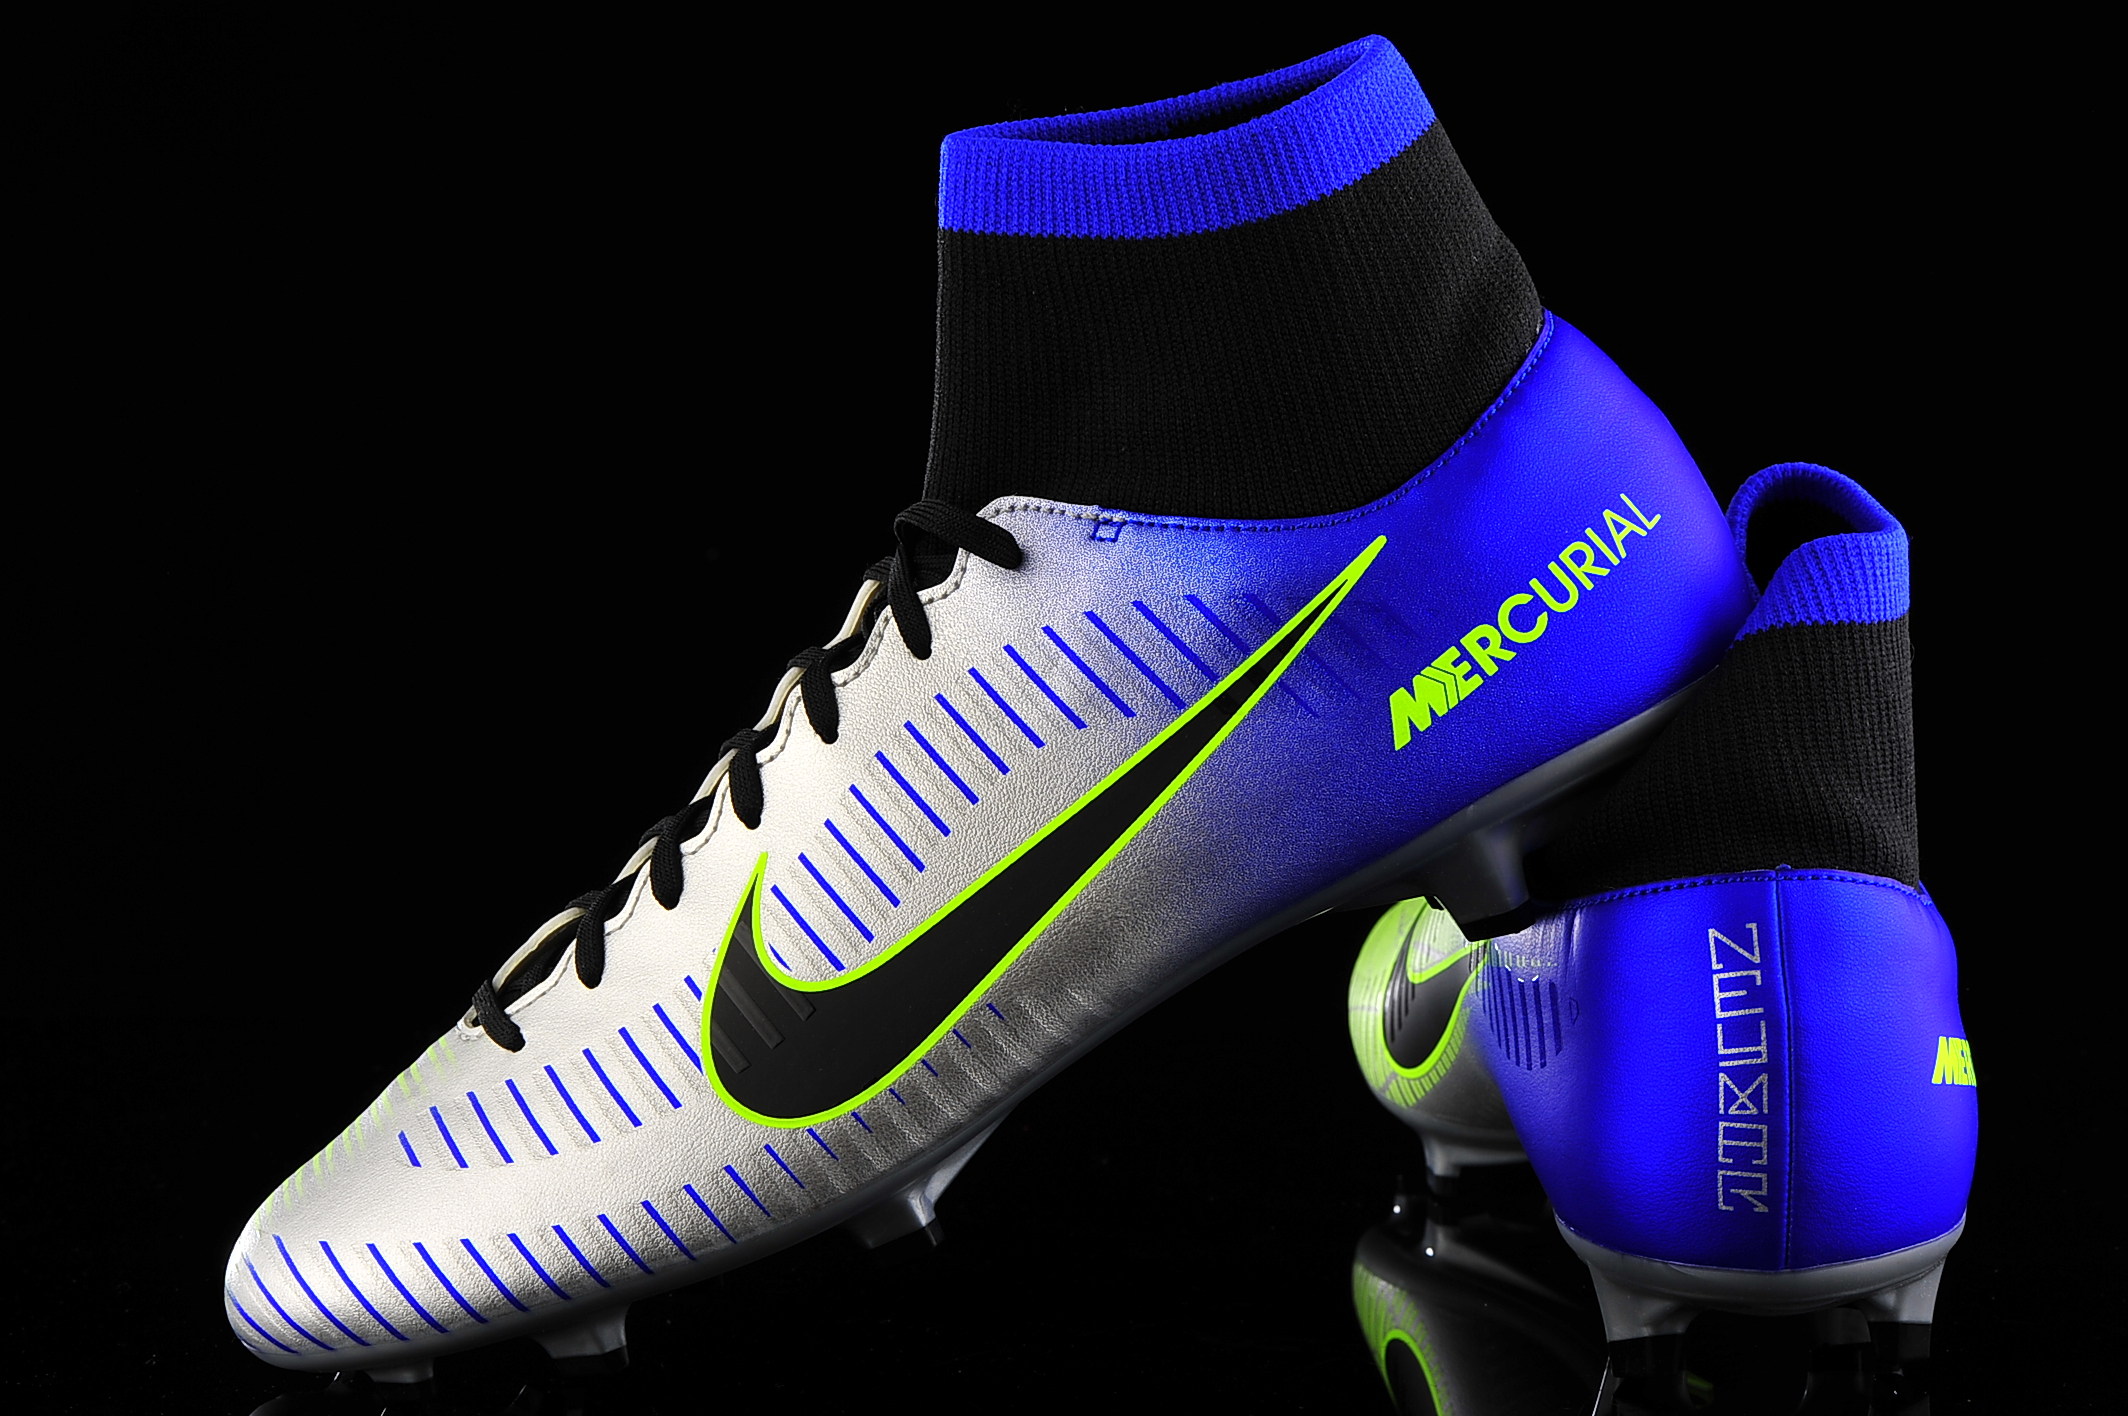 Nike Mercurial VI DF NJR FG 921506-407 R-GOL.com - Football boots & equipment